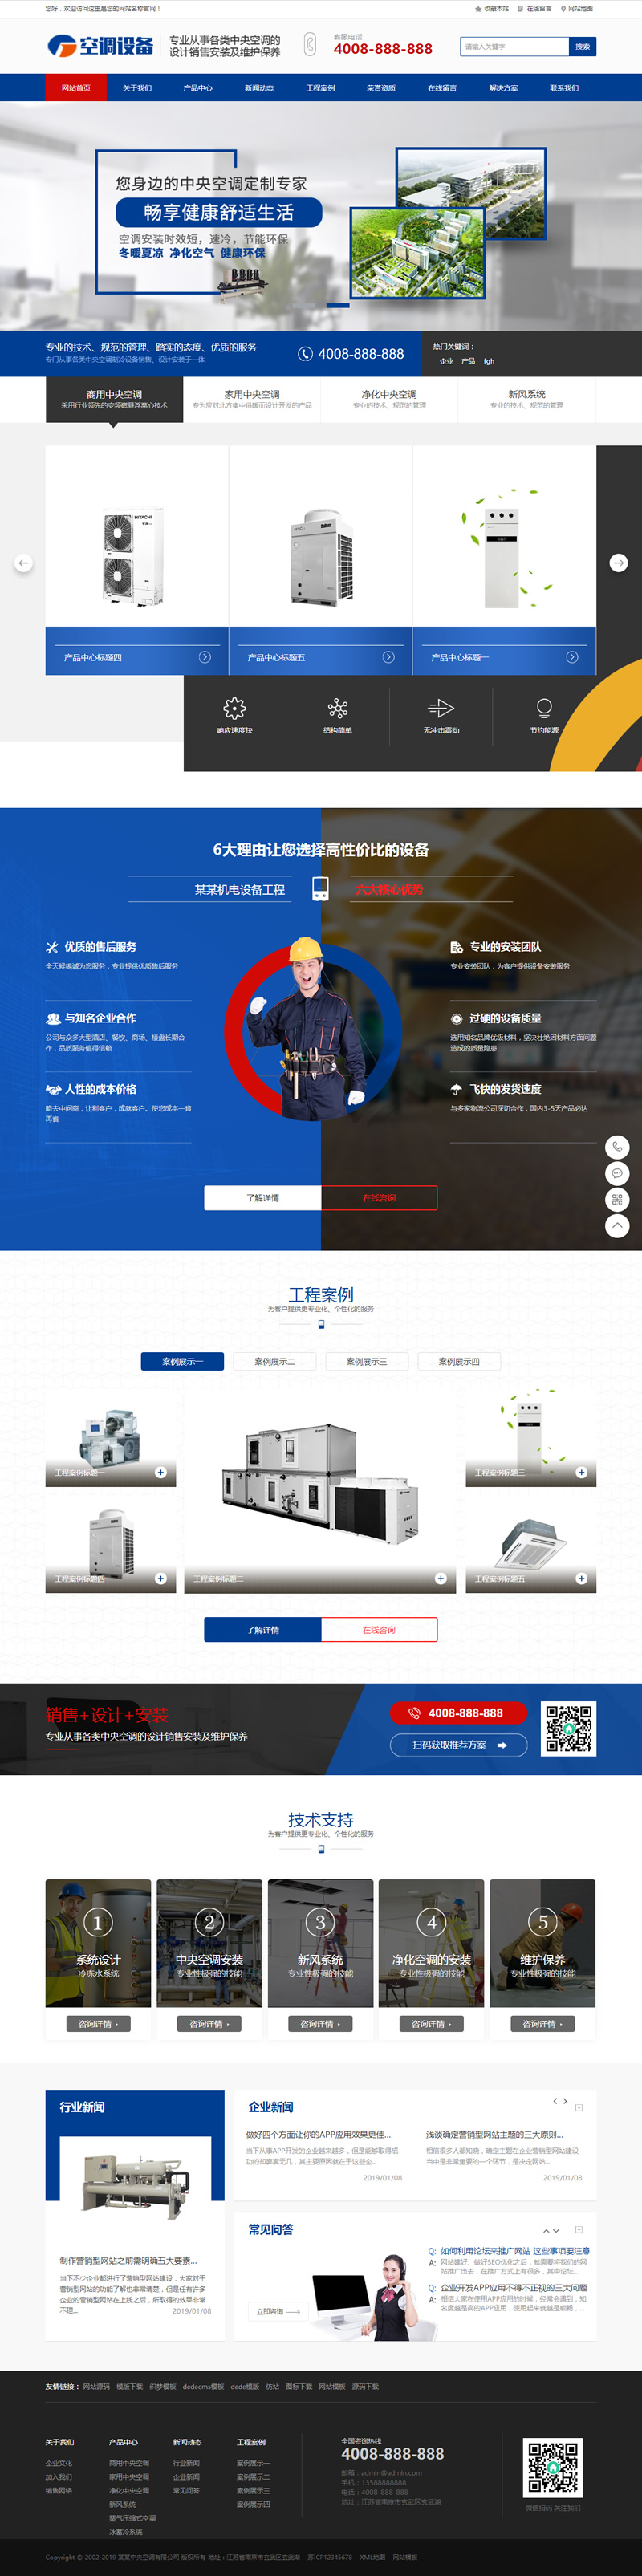 C196 织梦dedecms蓝色营销型空调制冷设备公司网站模板(带手机移动端)